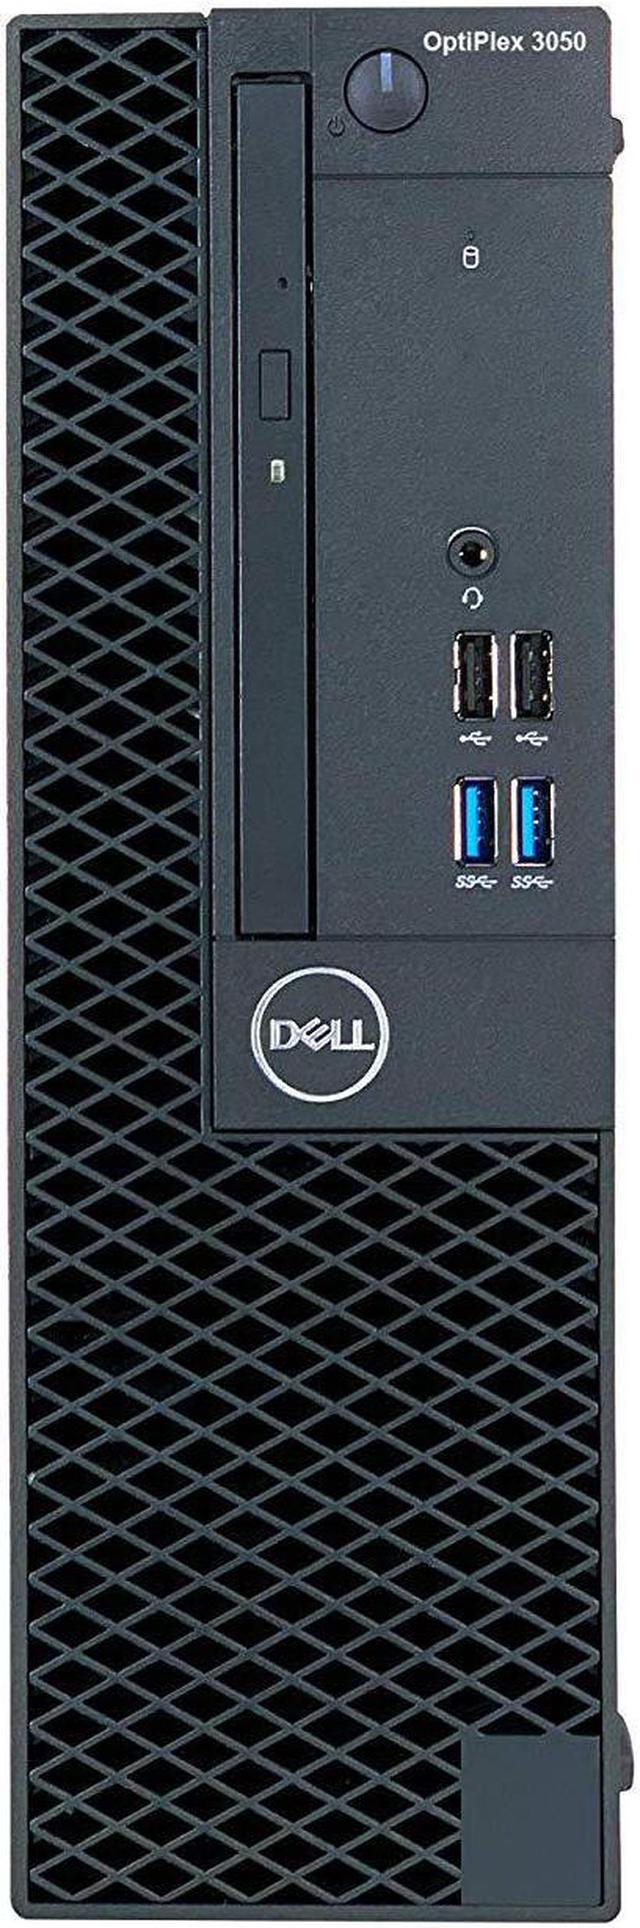 Refurbished: Dell OptiPlex 3050 SFF PC - Intel Core i5 6500 6th